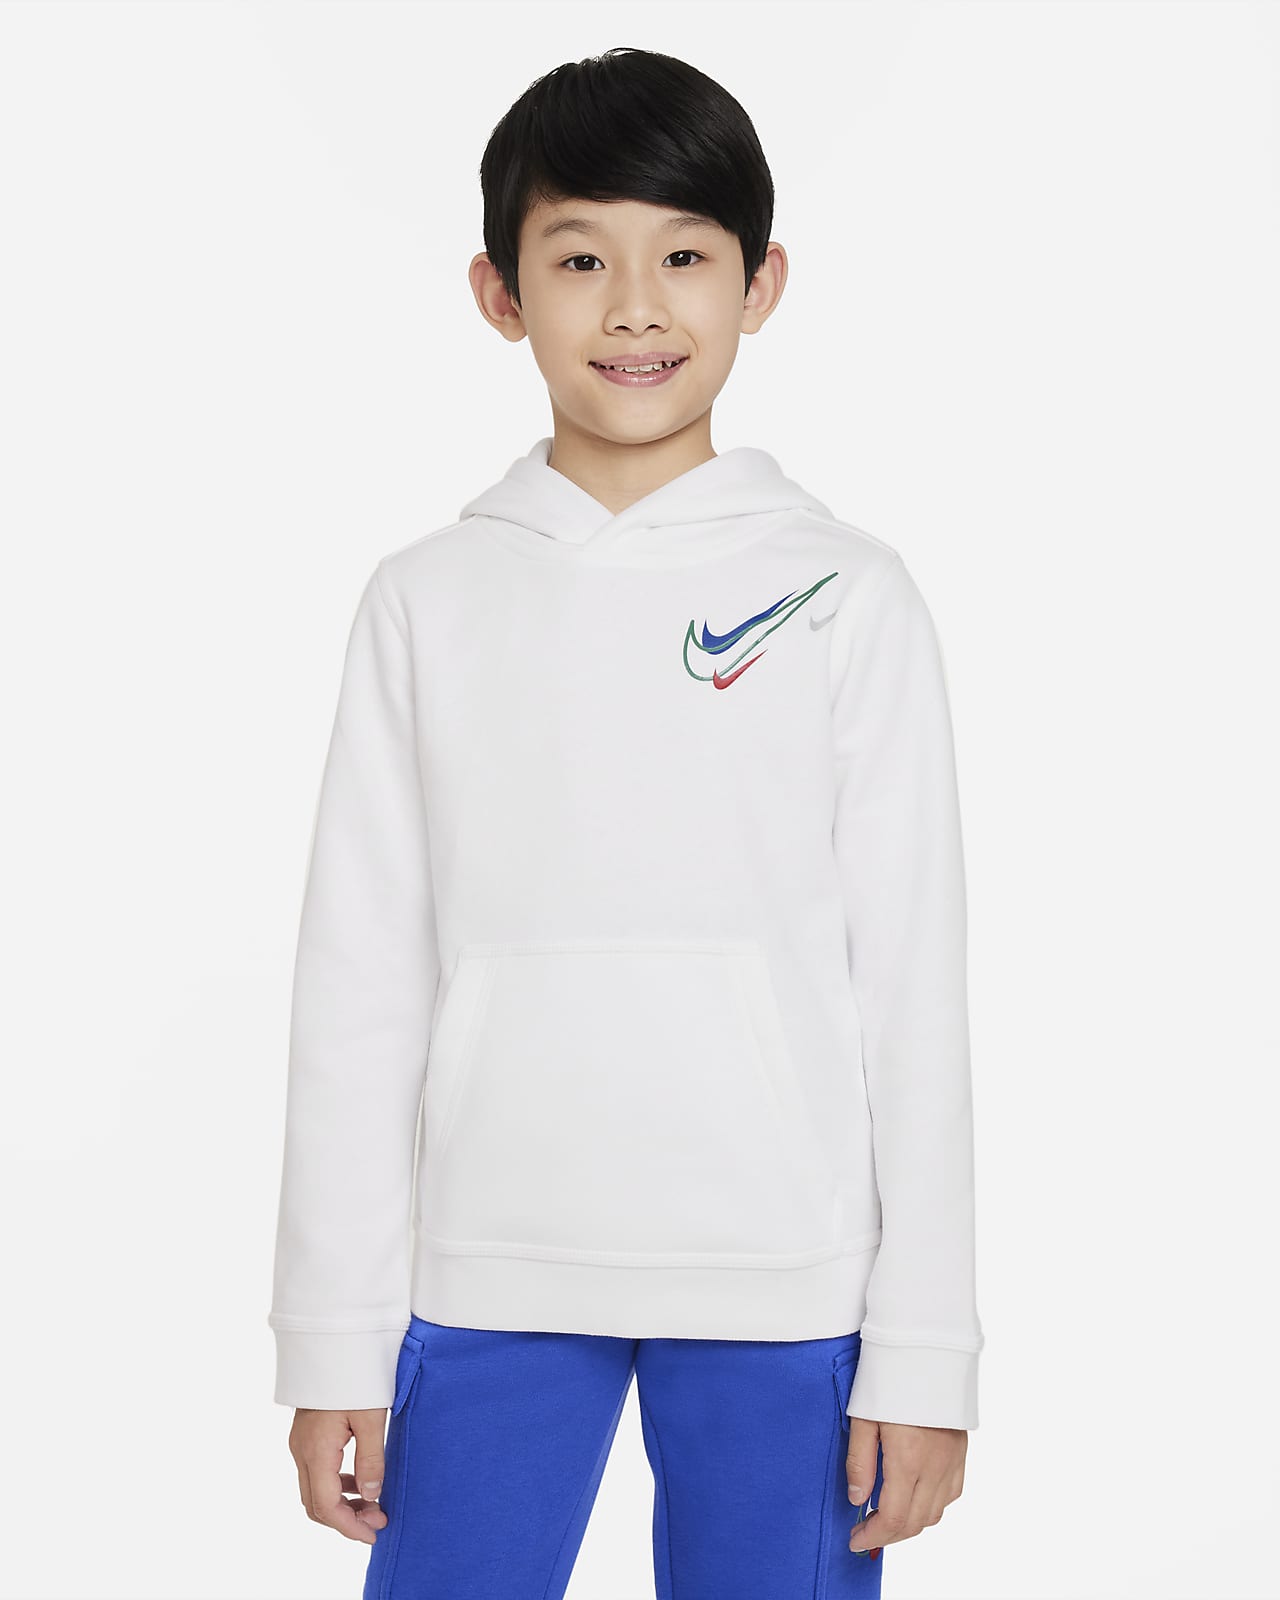 Nike Sportswear Older Kids' (Boys') Fleece Hoodie